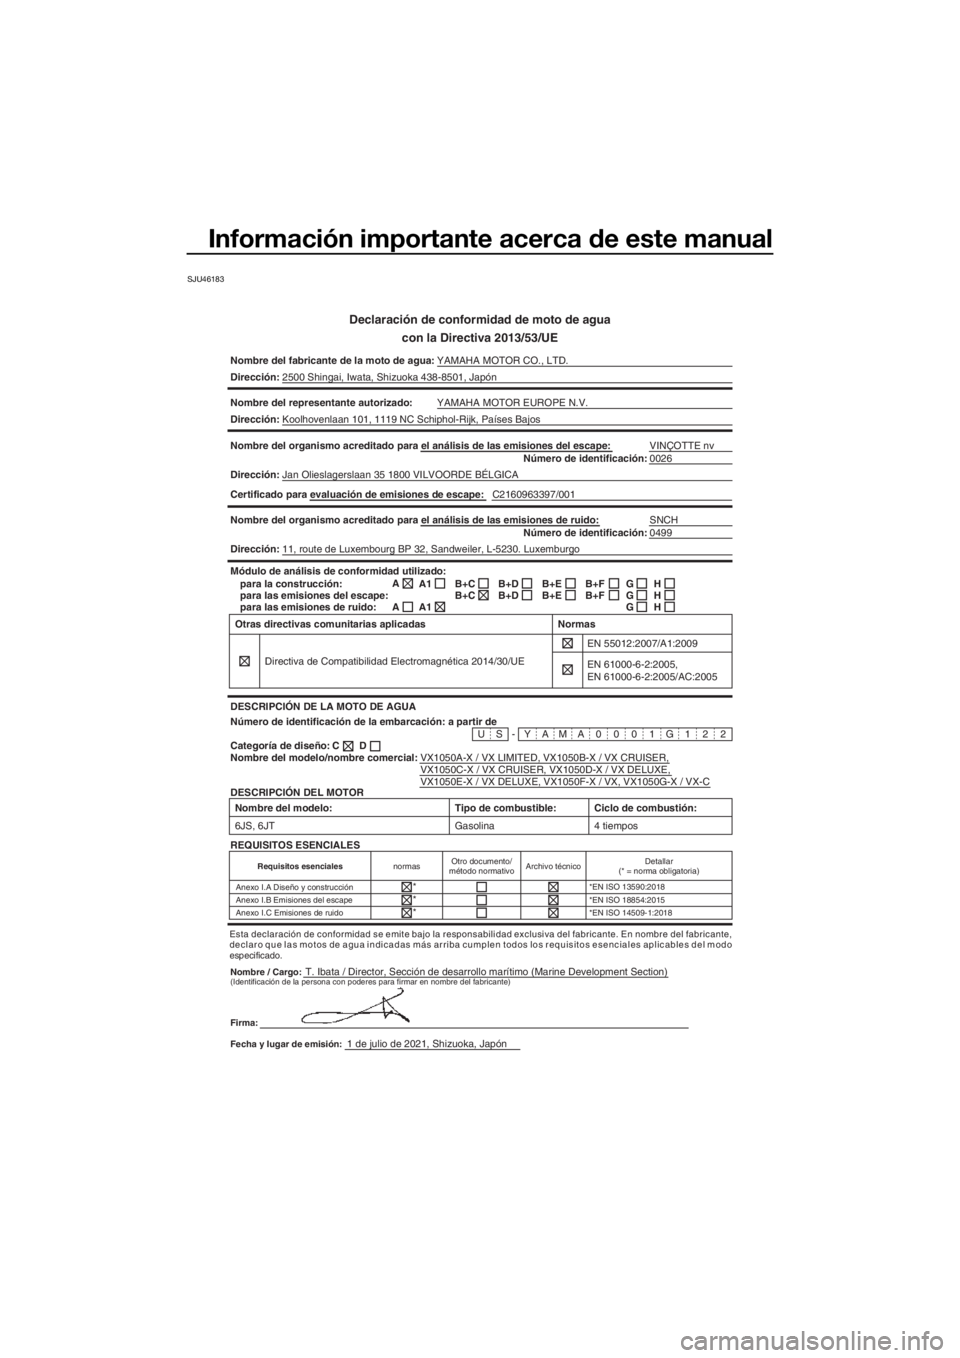 YAMAHA VX CRUISER 2022  Manuale de Empleo (in Spanish) Información importante acerca de este manual
SJU46183
Declaración de conformidad de moto de aguacon la Directiva 2013/53/UE
Nombre del fabricante de la moto de agua: YAMAHA MOTOR CO., LTD.
Direcció